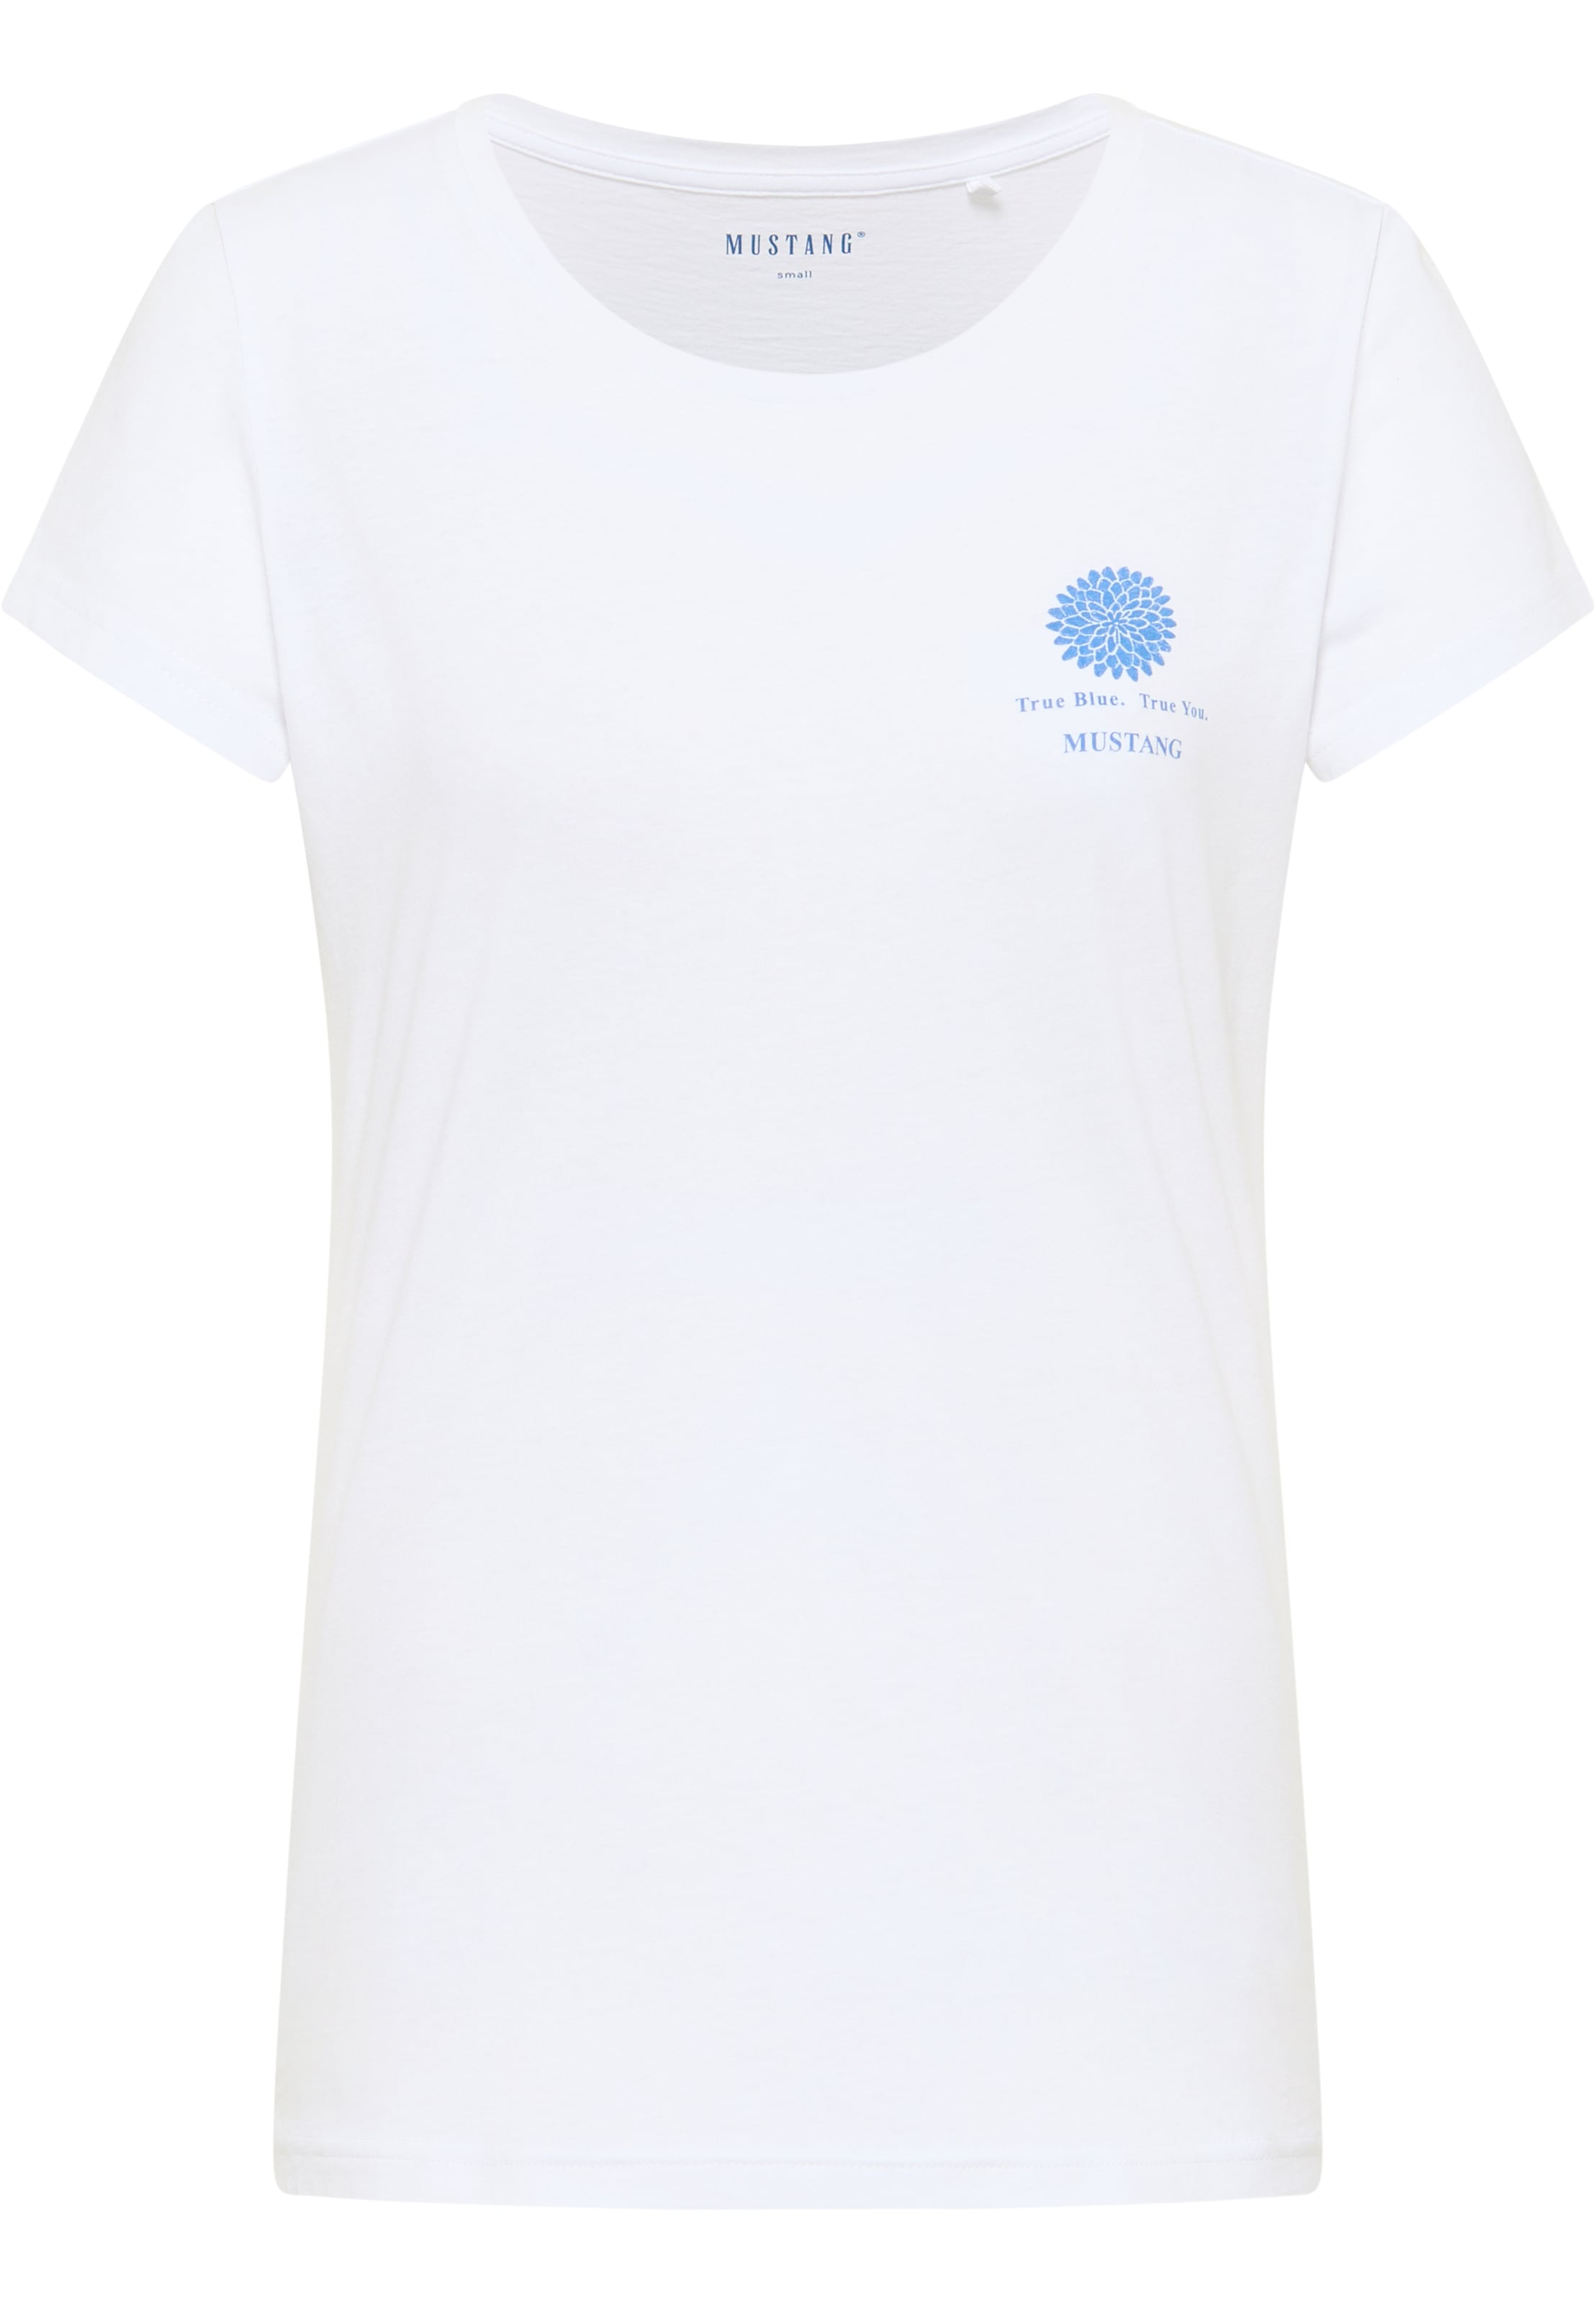 Alexia bestellen »Style MUSTANG C Chestprint« T-Shirt